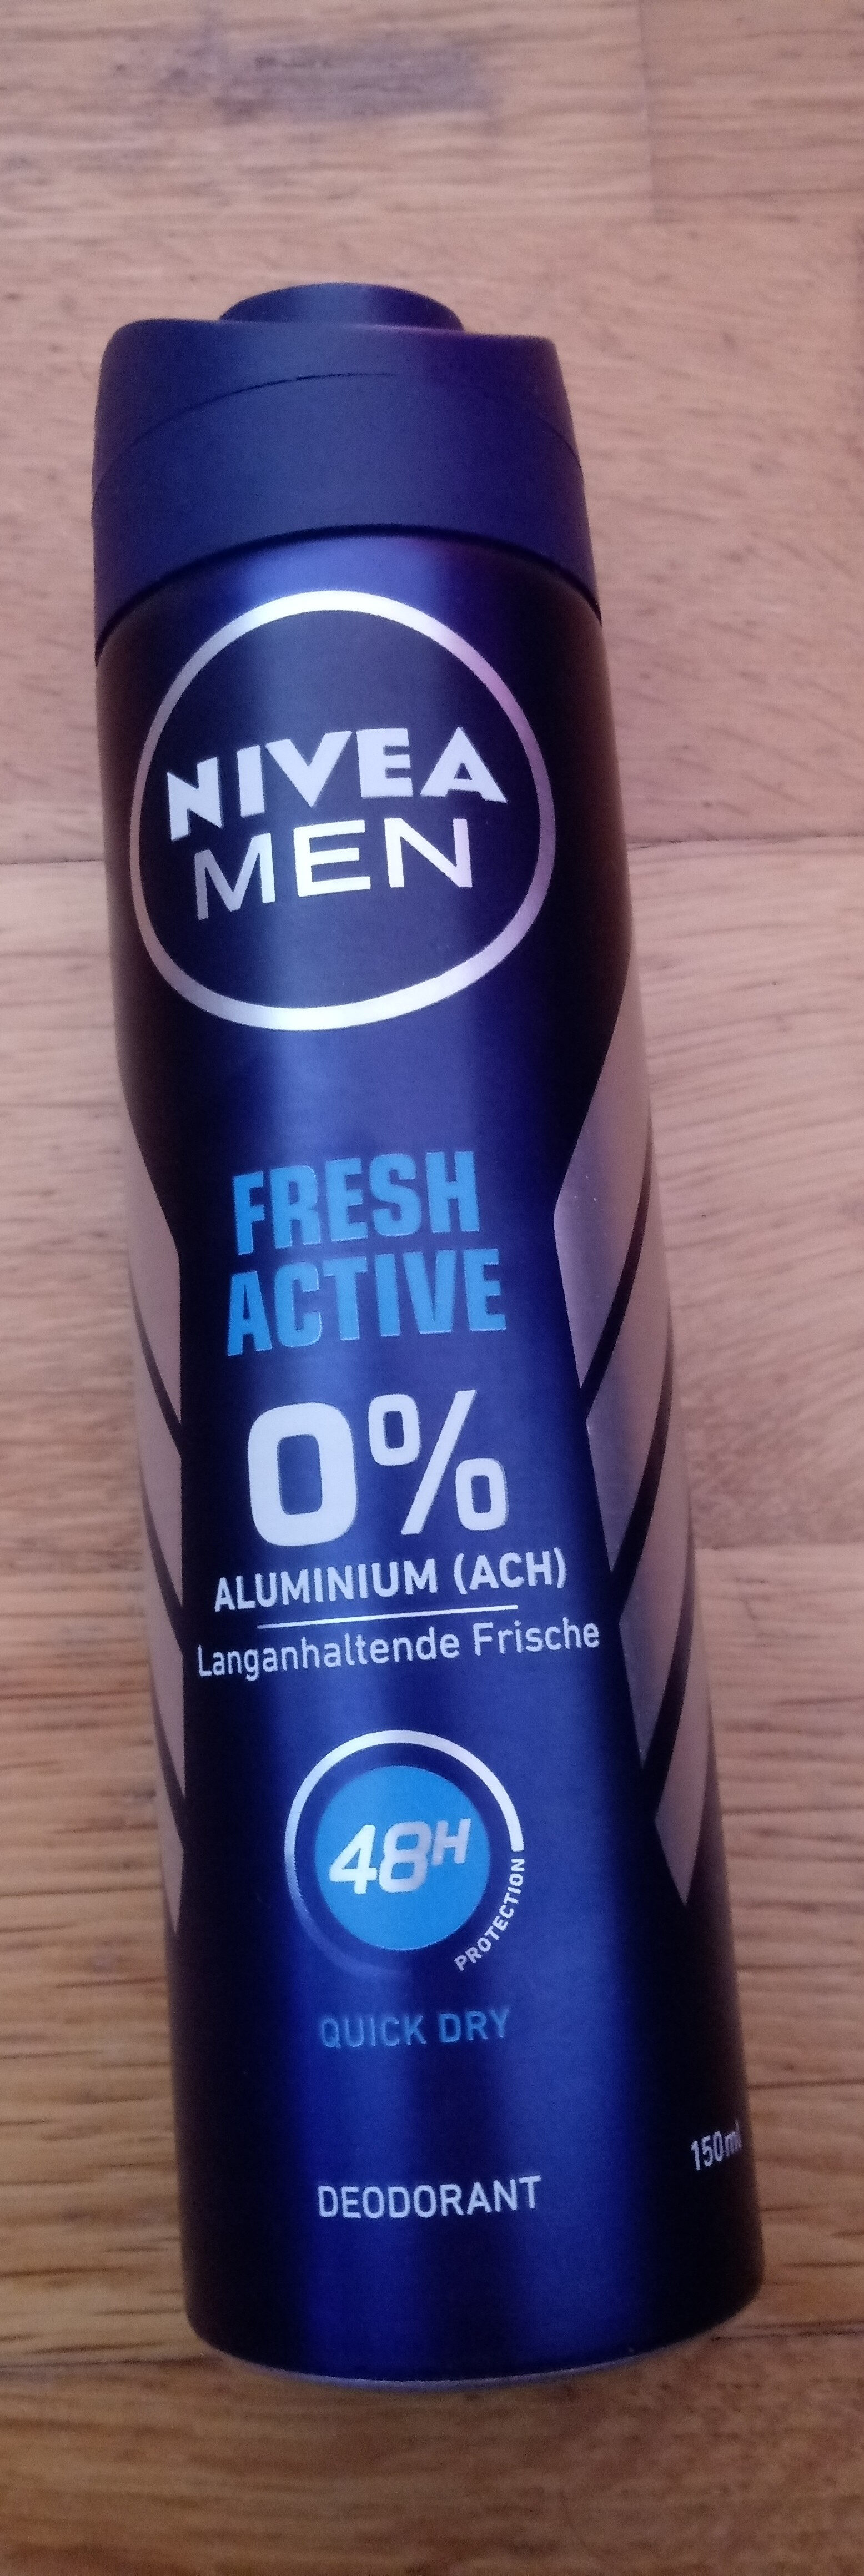 Fresh Active Deodorant - Produkt - de